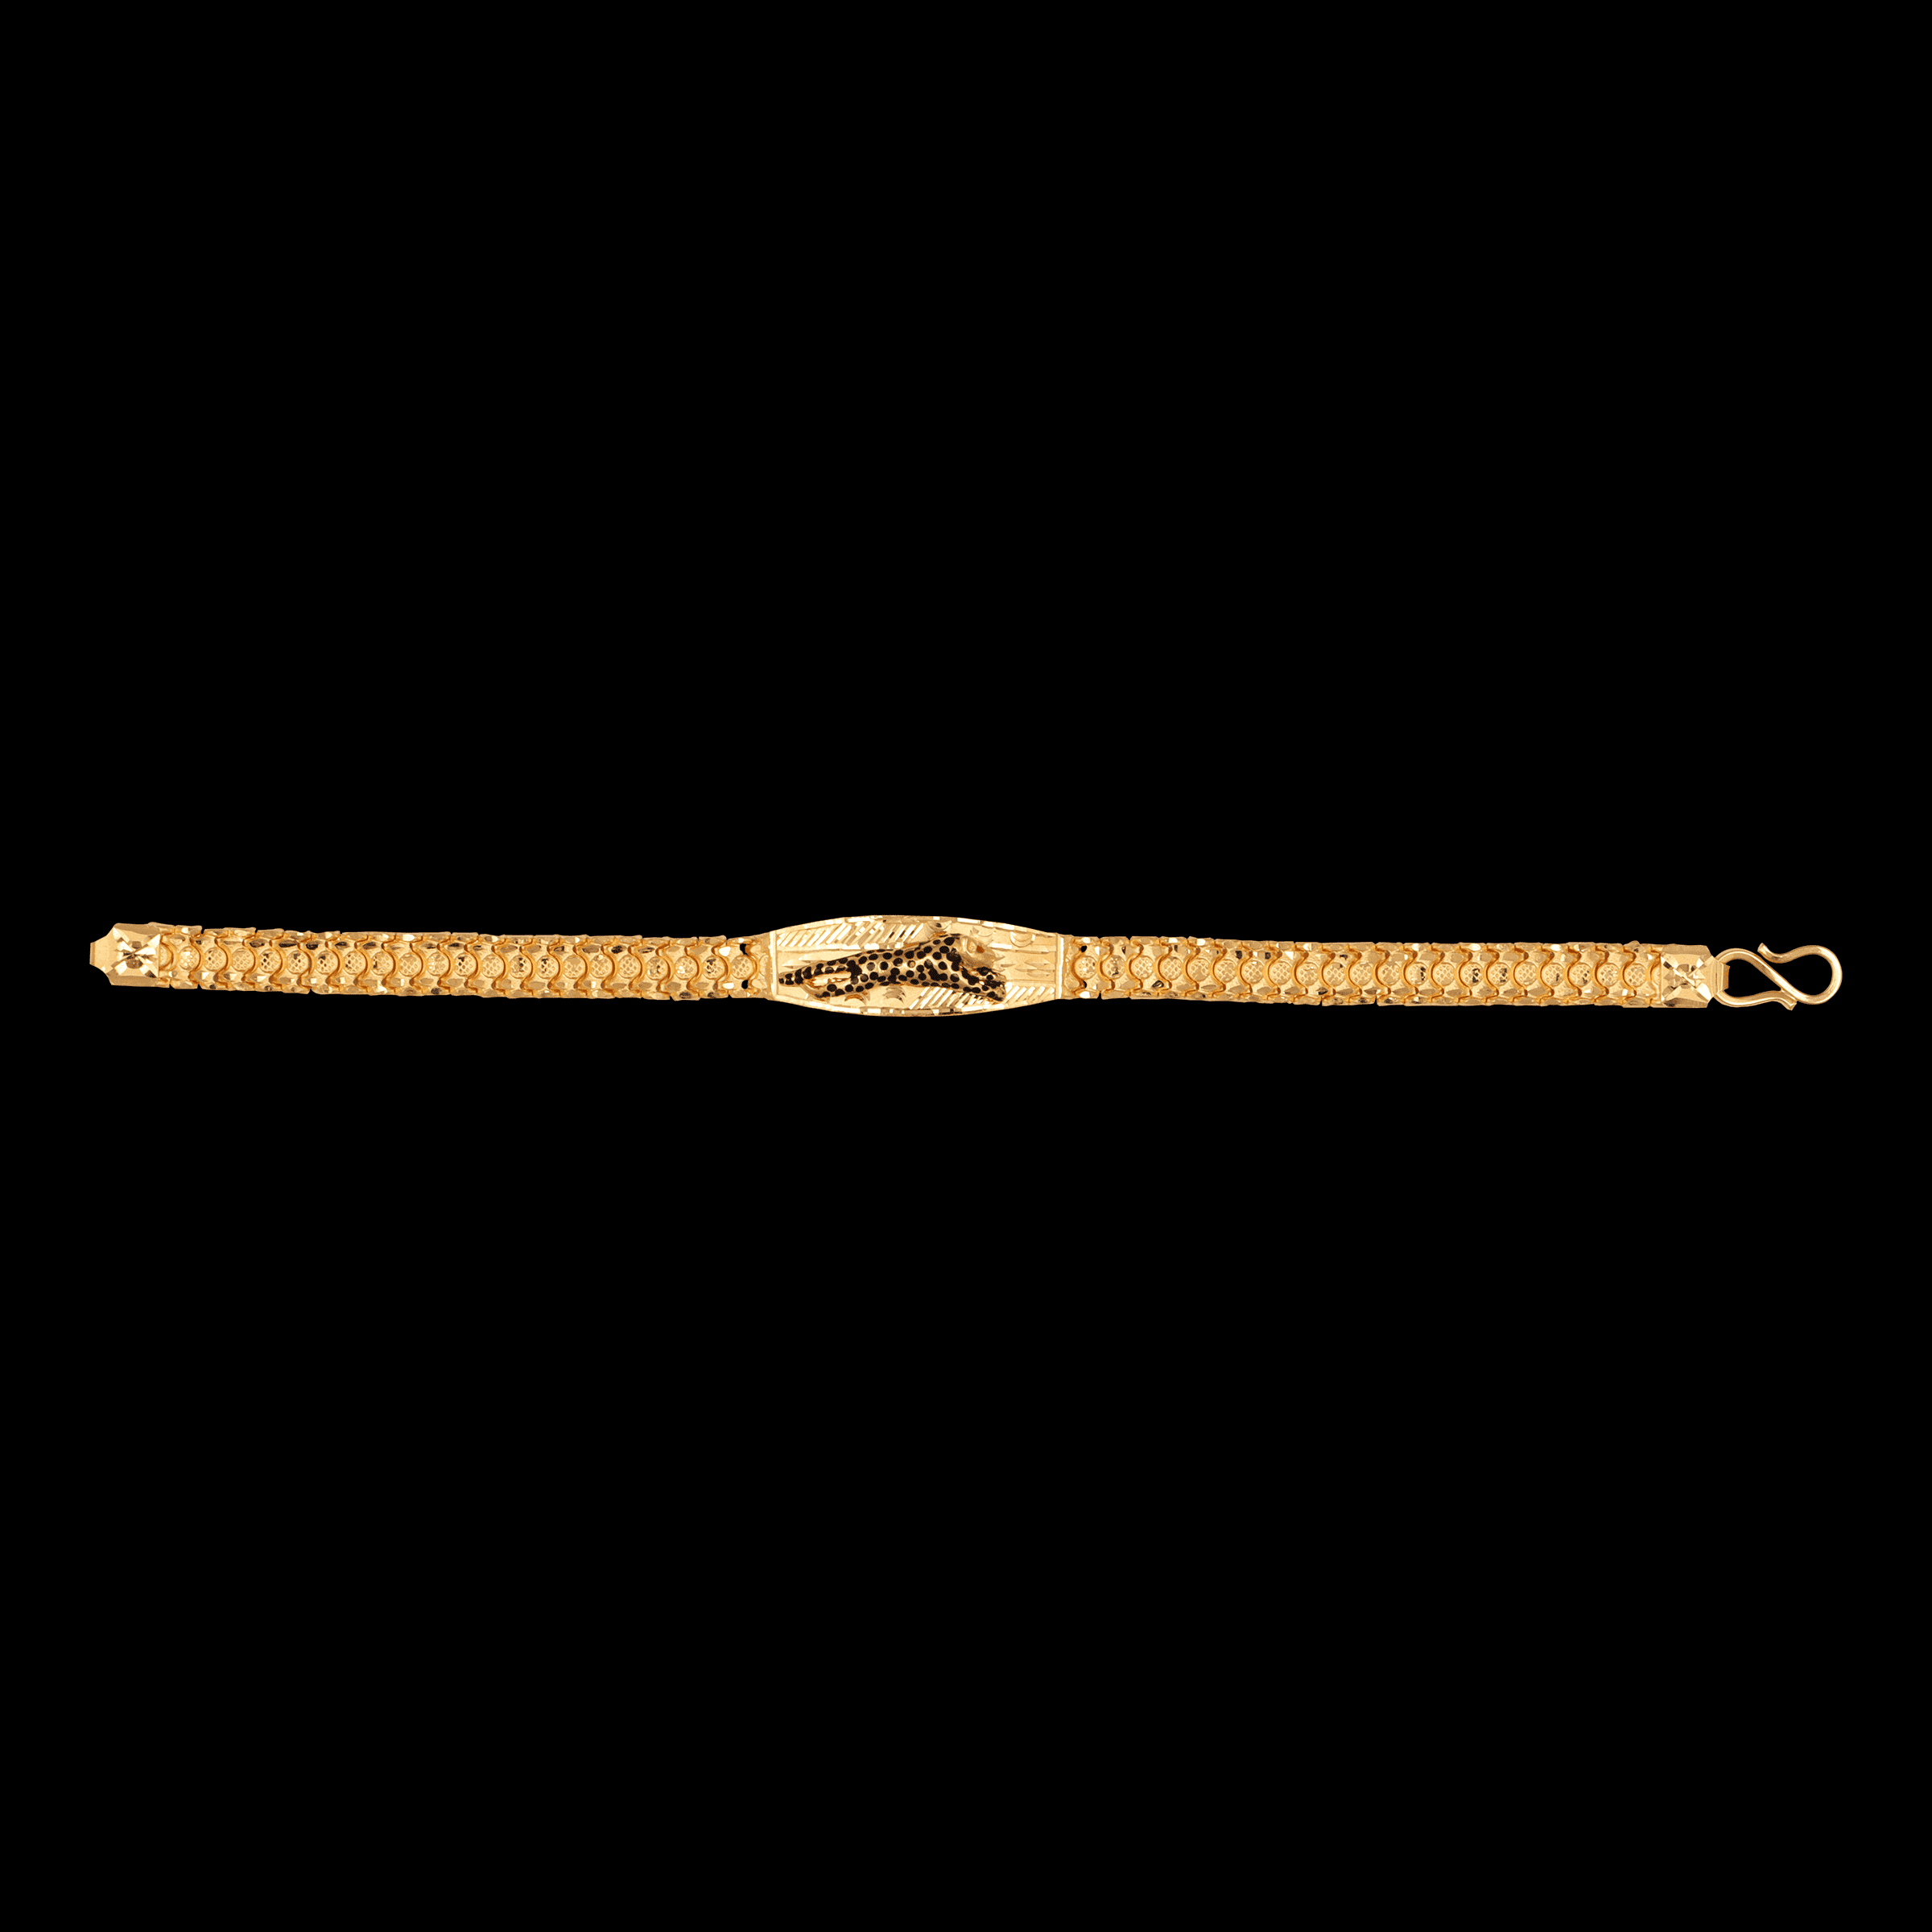 Jaguar gold bracelet | Dainty bracelets, Gold bracelet, Fashion jewelry